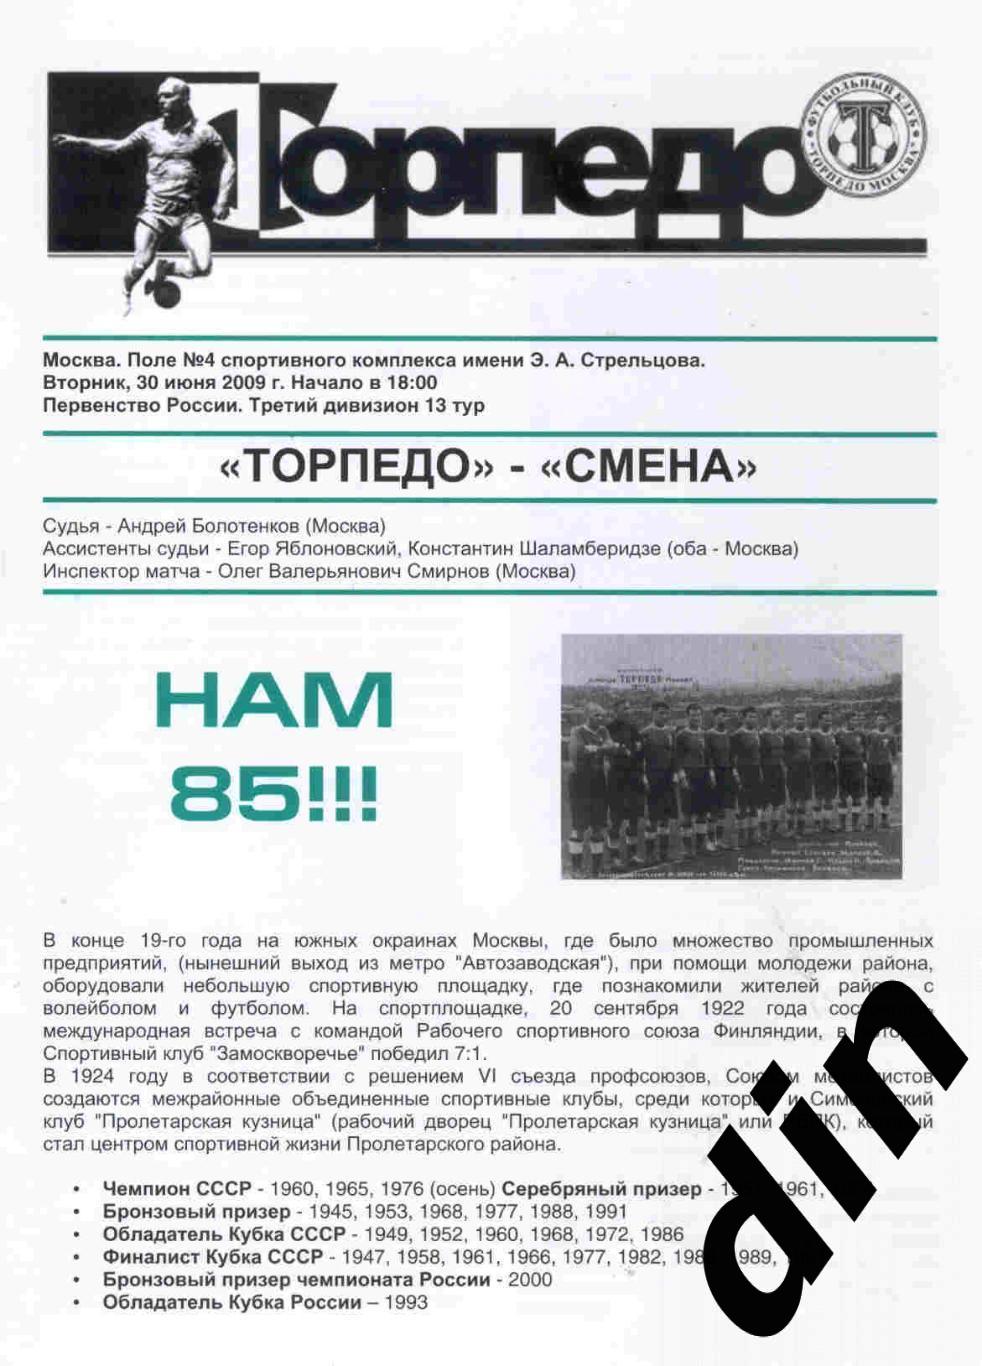 Торпедо Москва - Смена Москва 30.06.2009